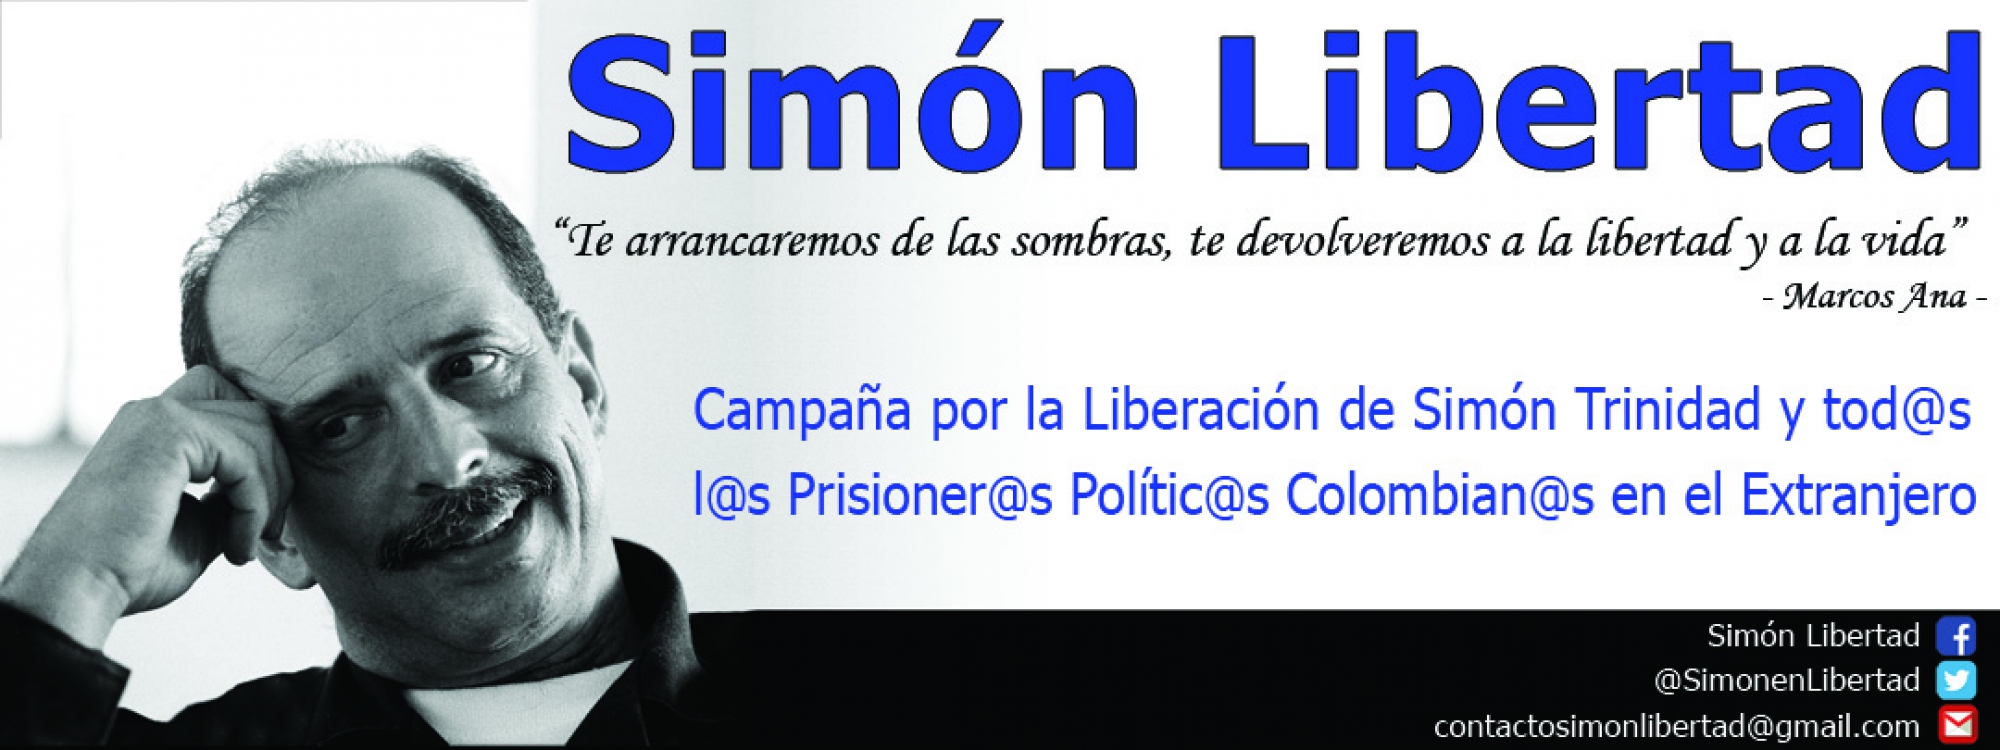 Banner de la campaña de Simón Trinidad